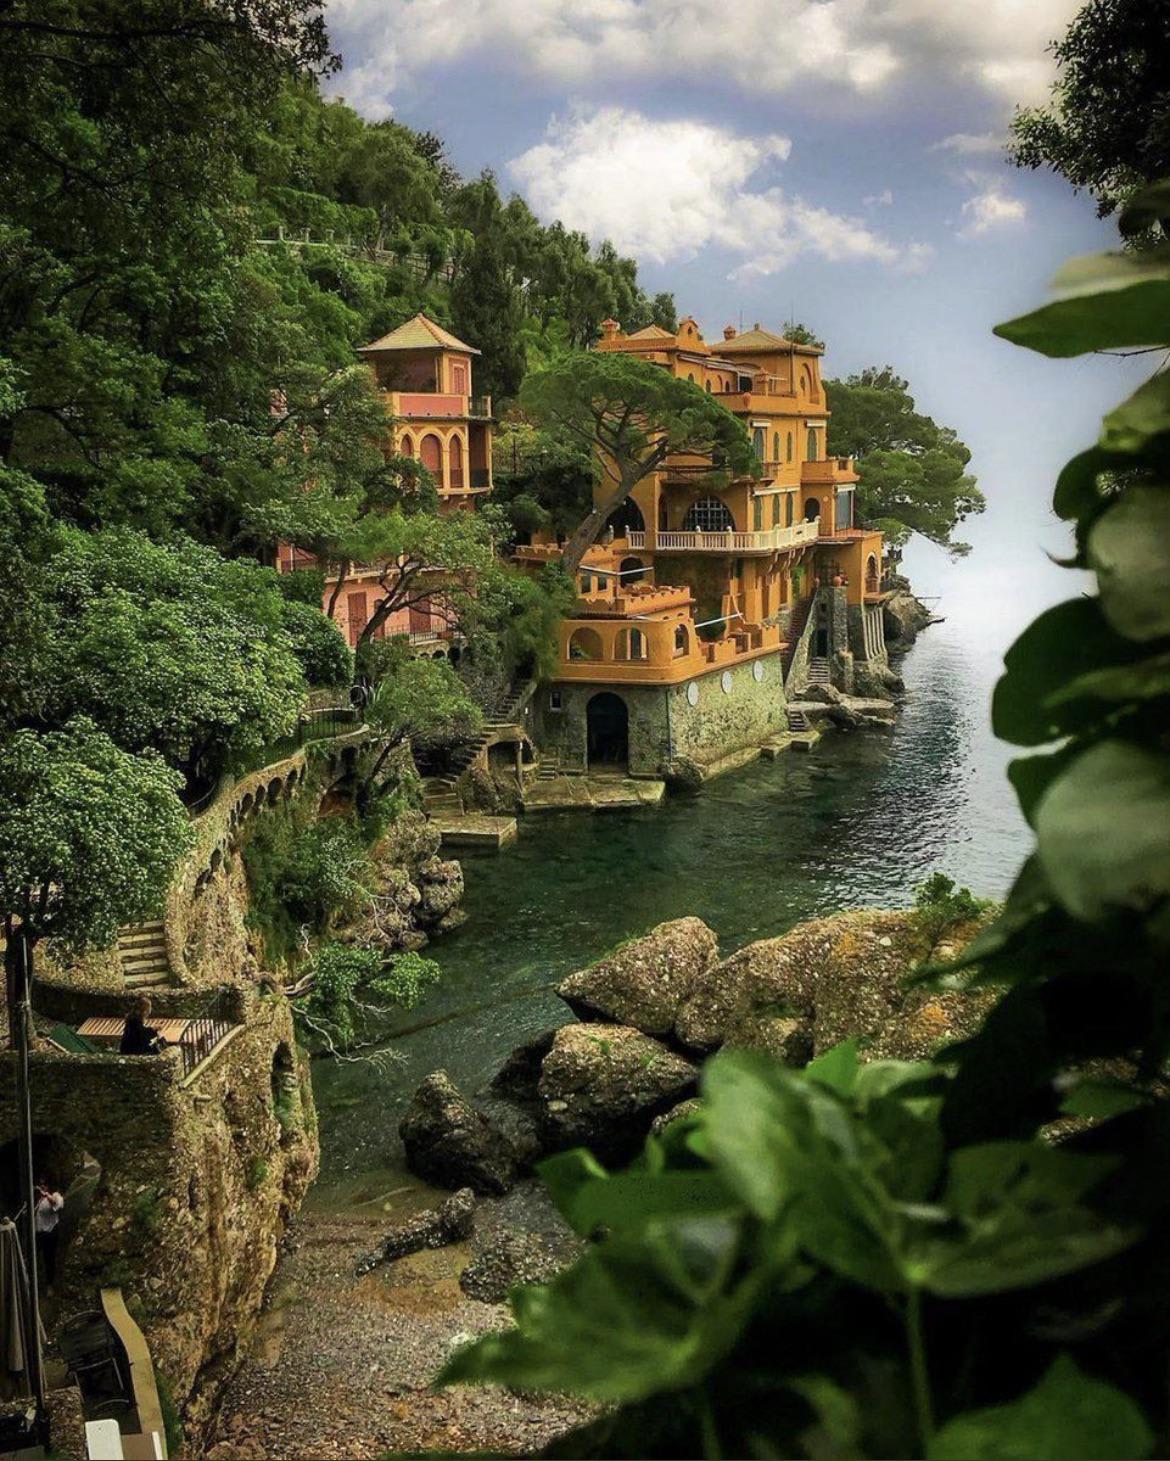 Beautiful spot in Portofino, Liguria, Italy 🇮🇹